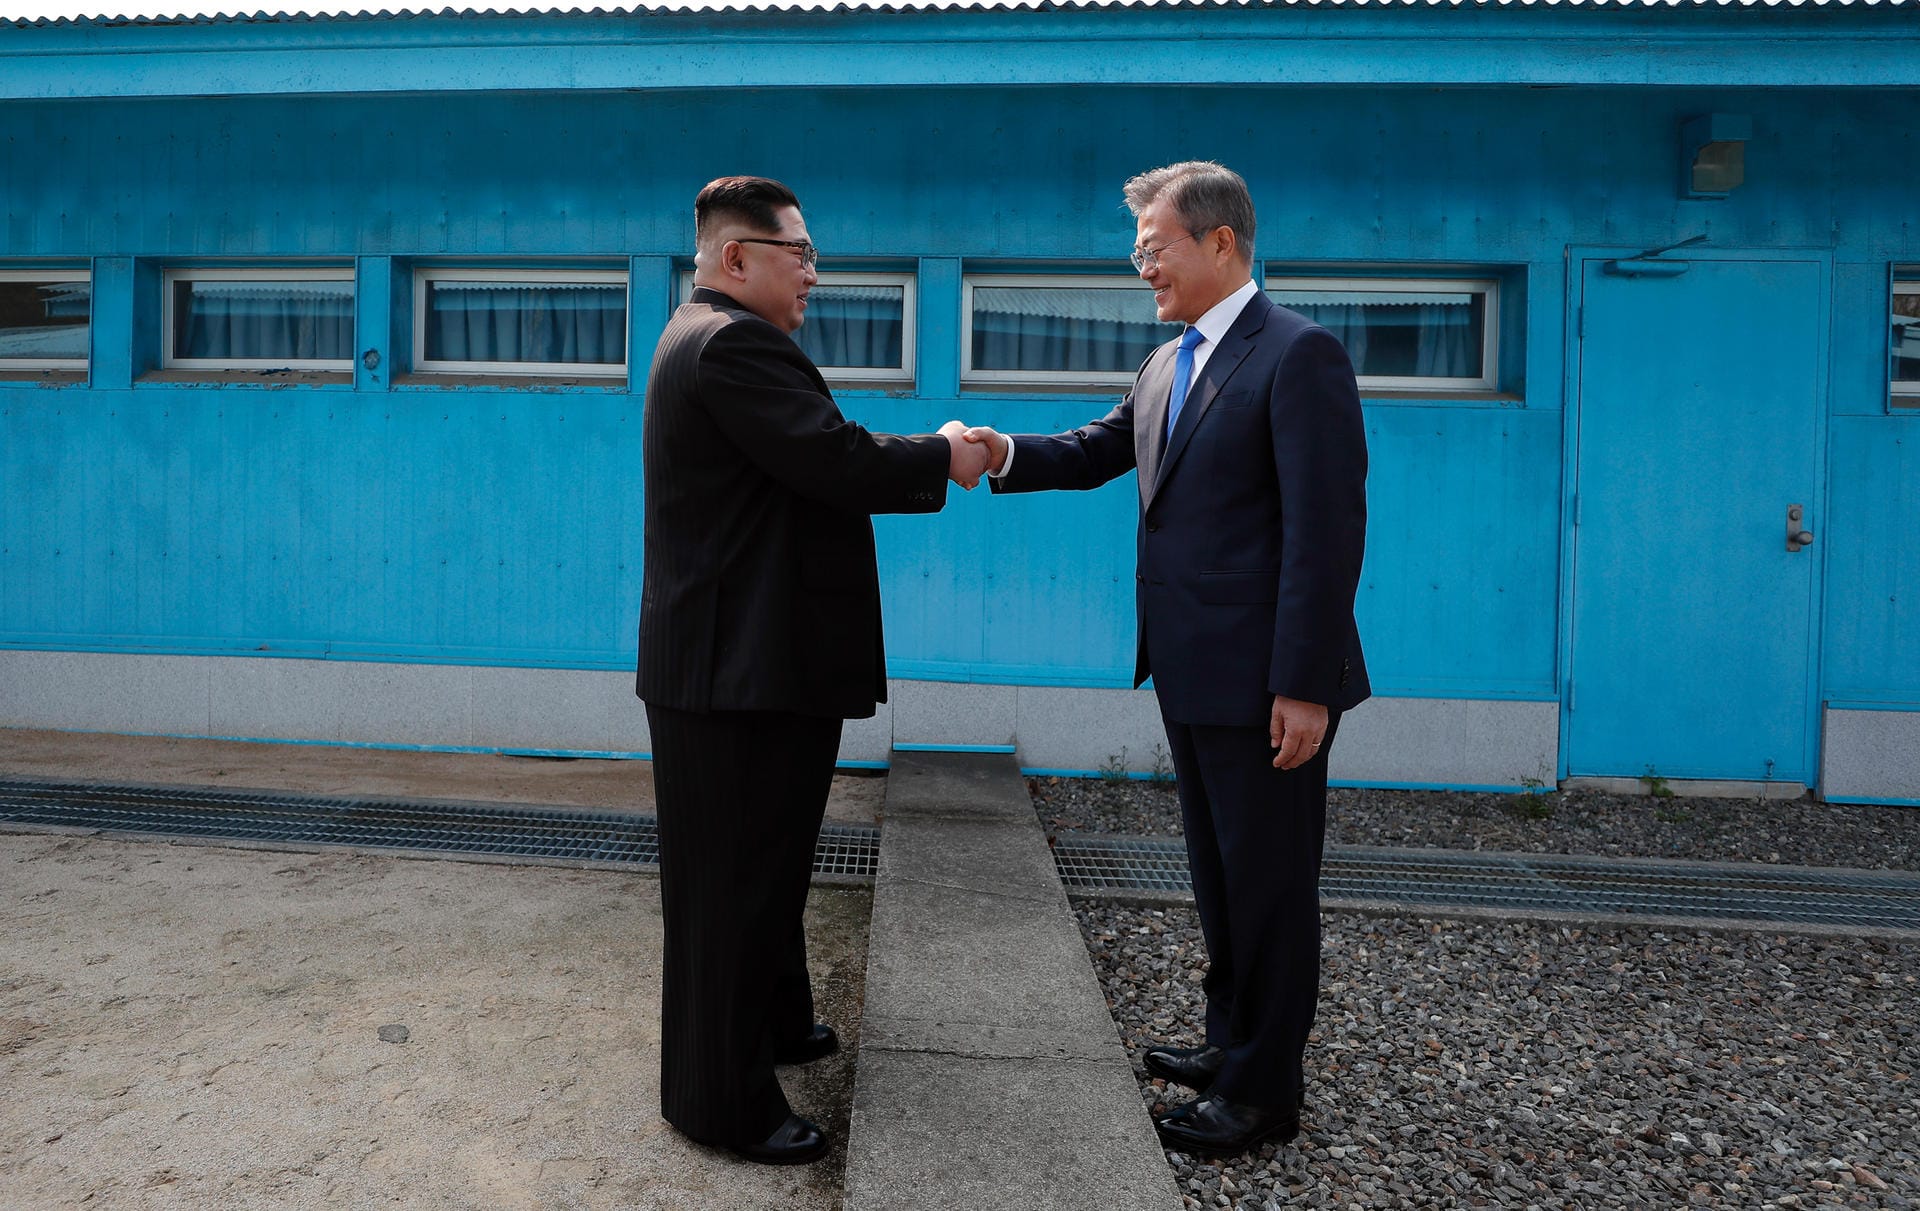 Nordkoreas Machthaber Kim Jong Un und der südkoreanische Präsident Moon Jae In haben sich im Grenzdorf Panmunjom zu bedeutenden Vereinbarungen getroffen. Gemeinsam solle der Frieden auf der koreanischen Halbinsel erreicht werden, so die Staatschefs vor ihrem Gespräch.